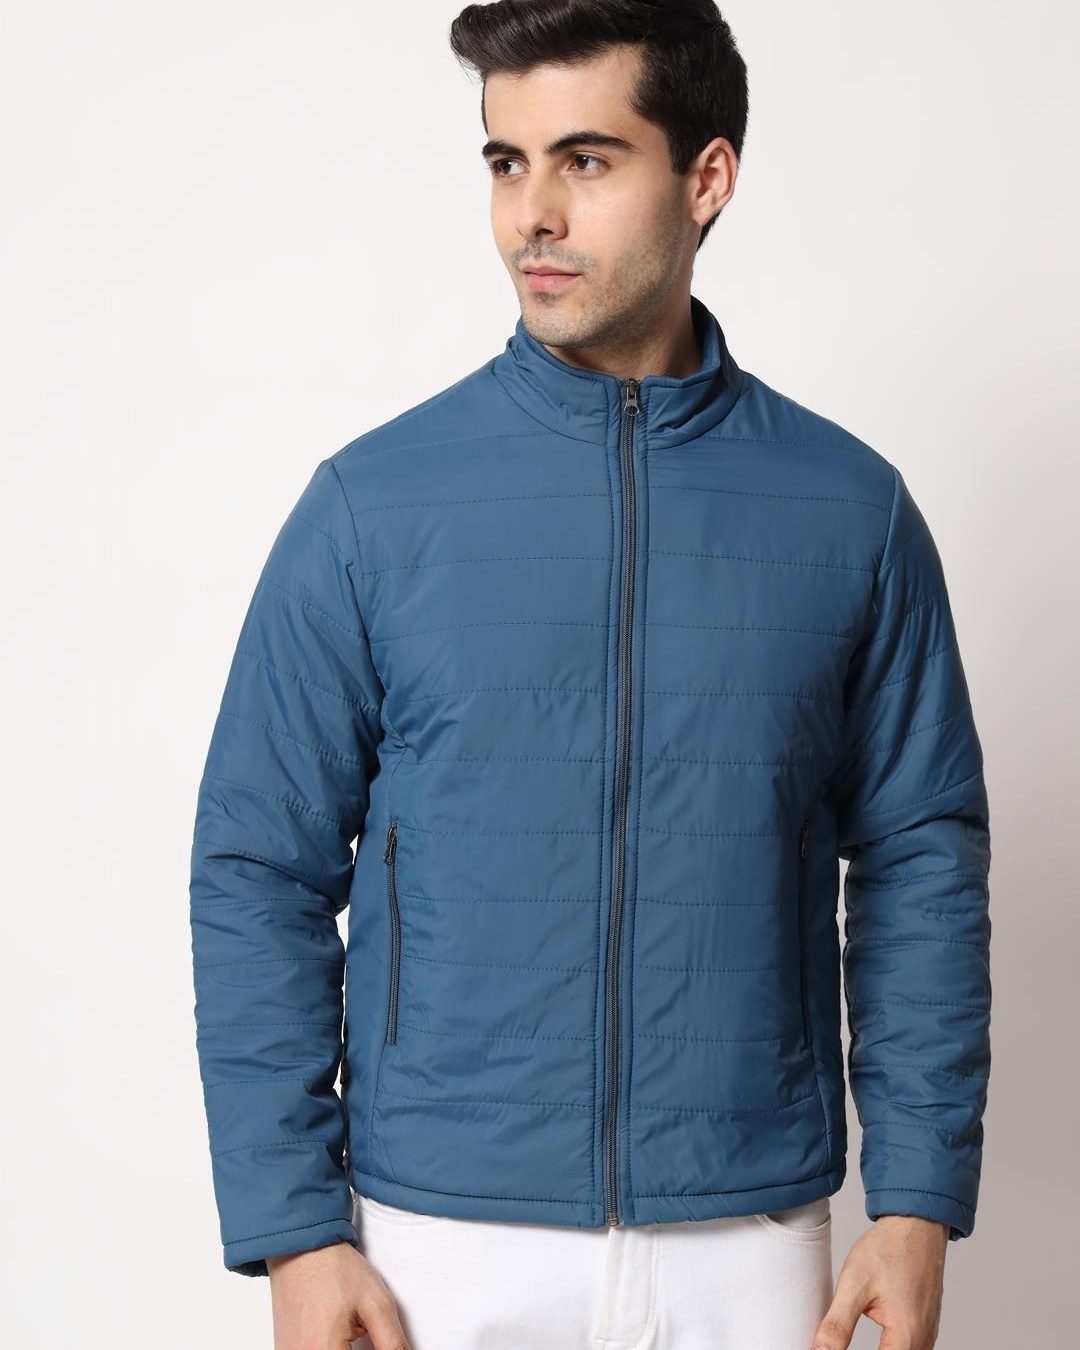 Buy Men's Blue Puffer Jacket Online at Bewakoof